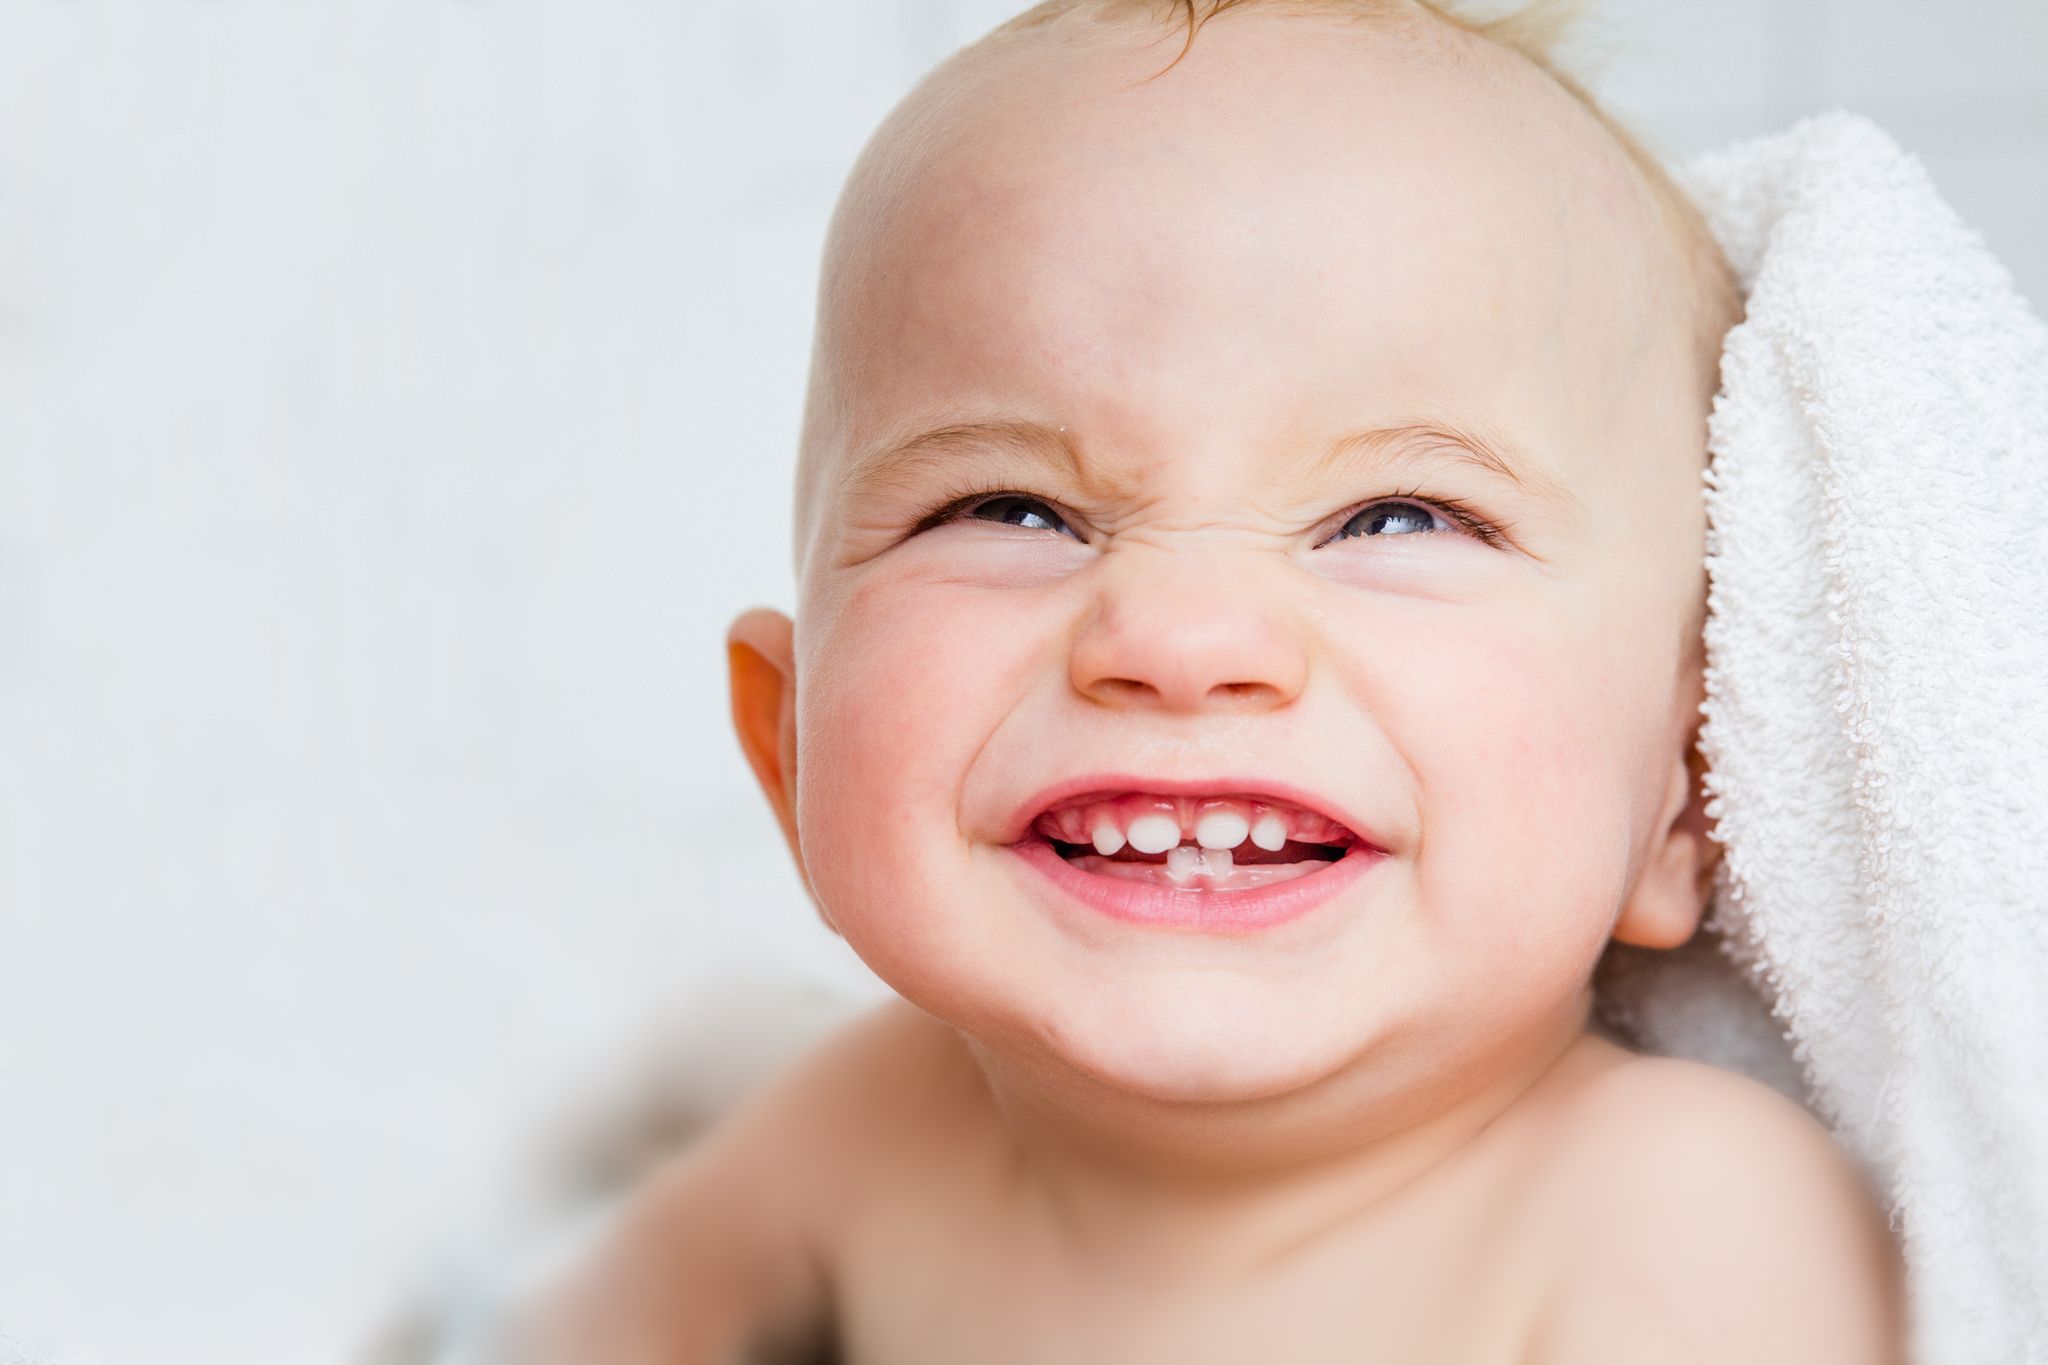 Comment soulager les douleurs d'un bébé qui fait ses dents? – L'Express